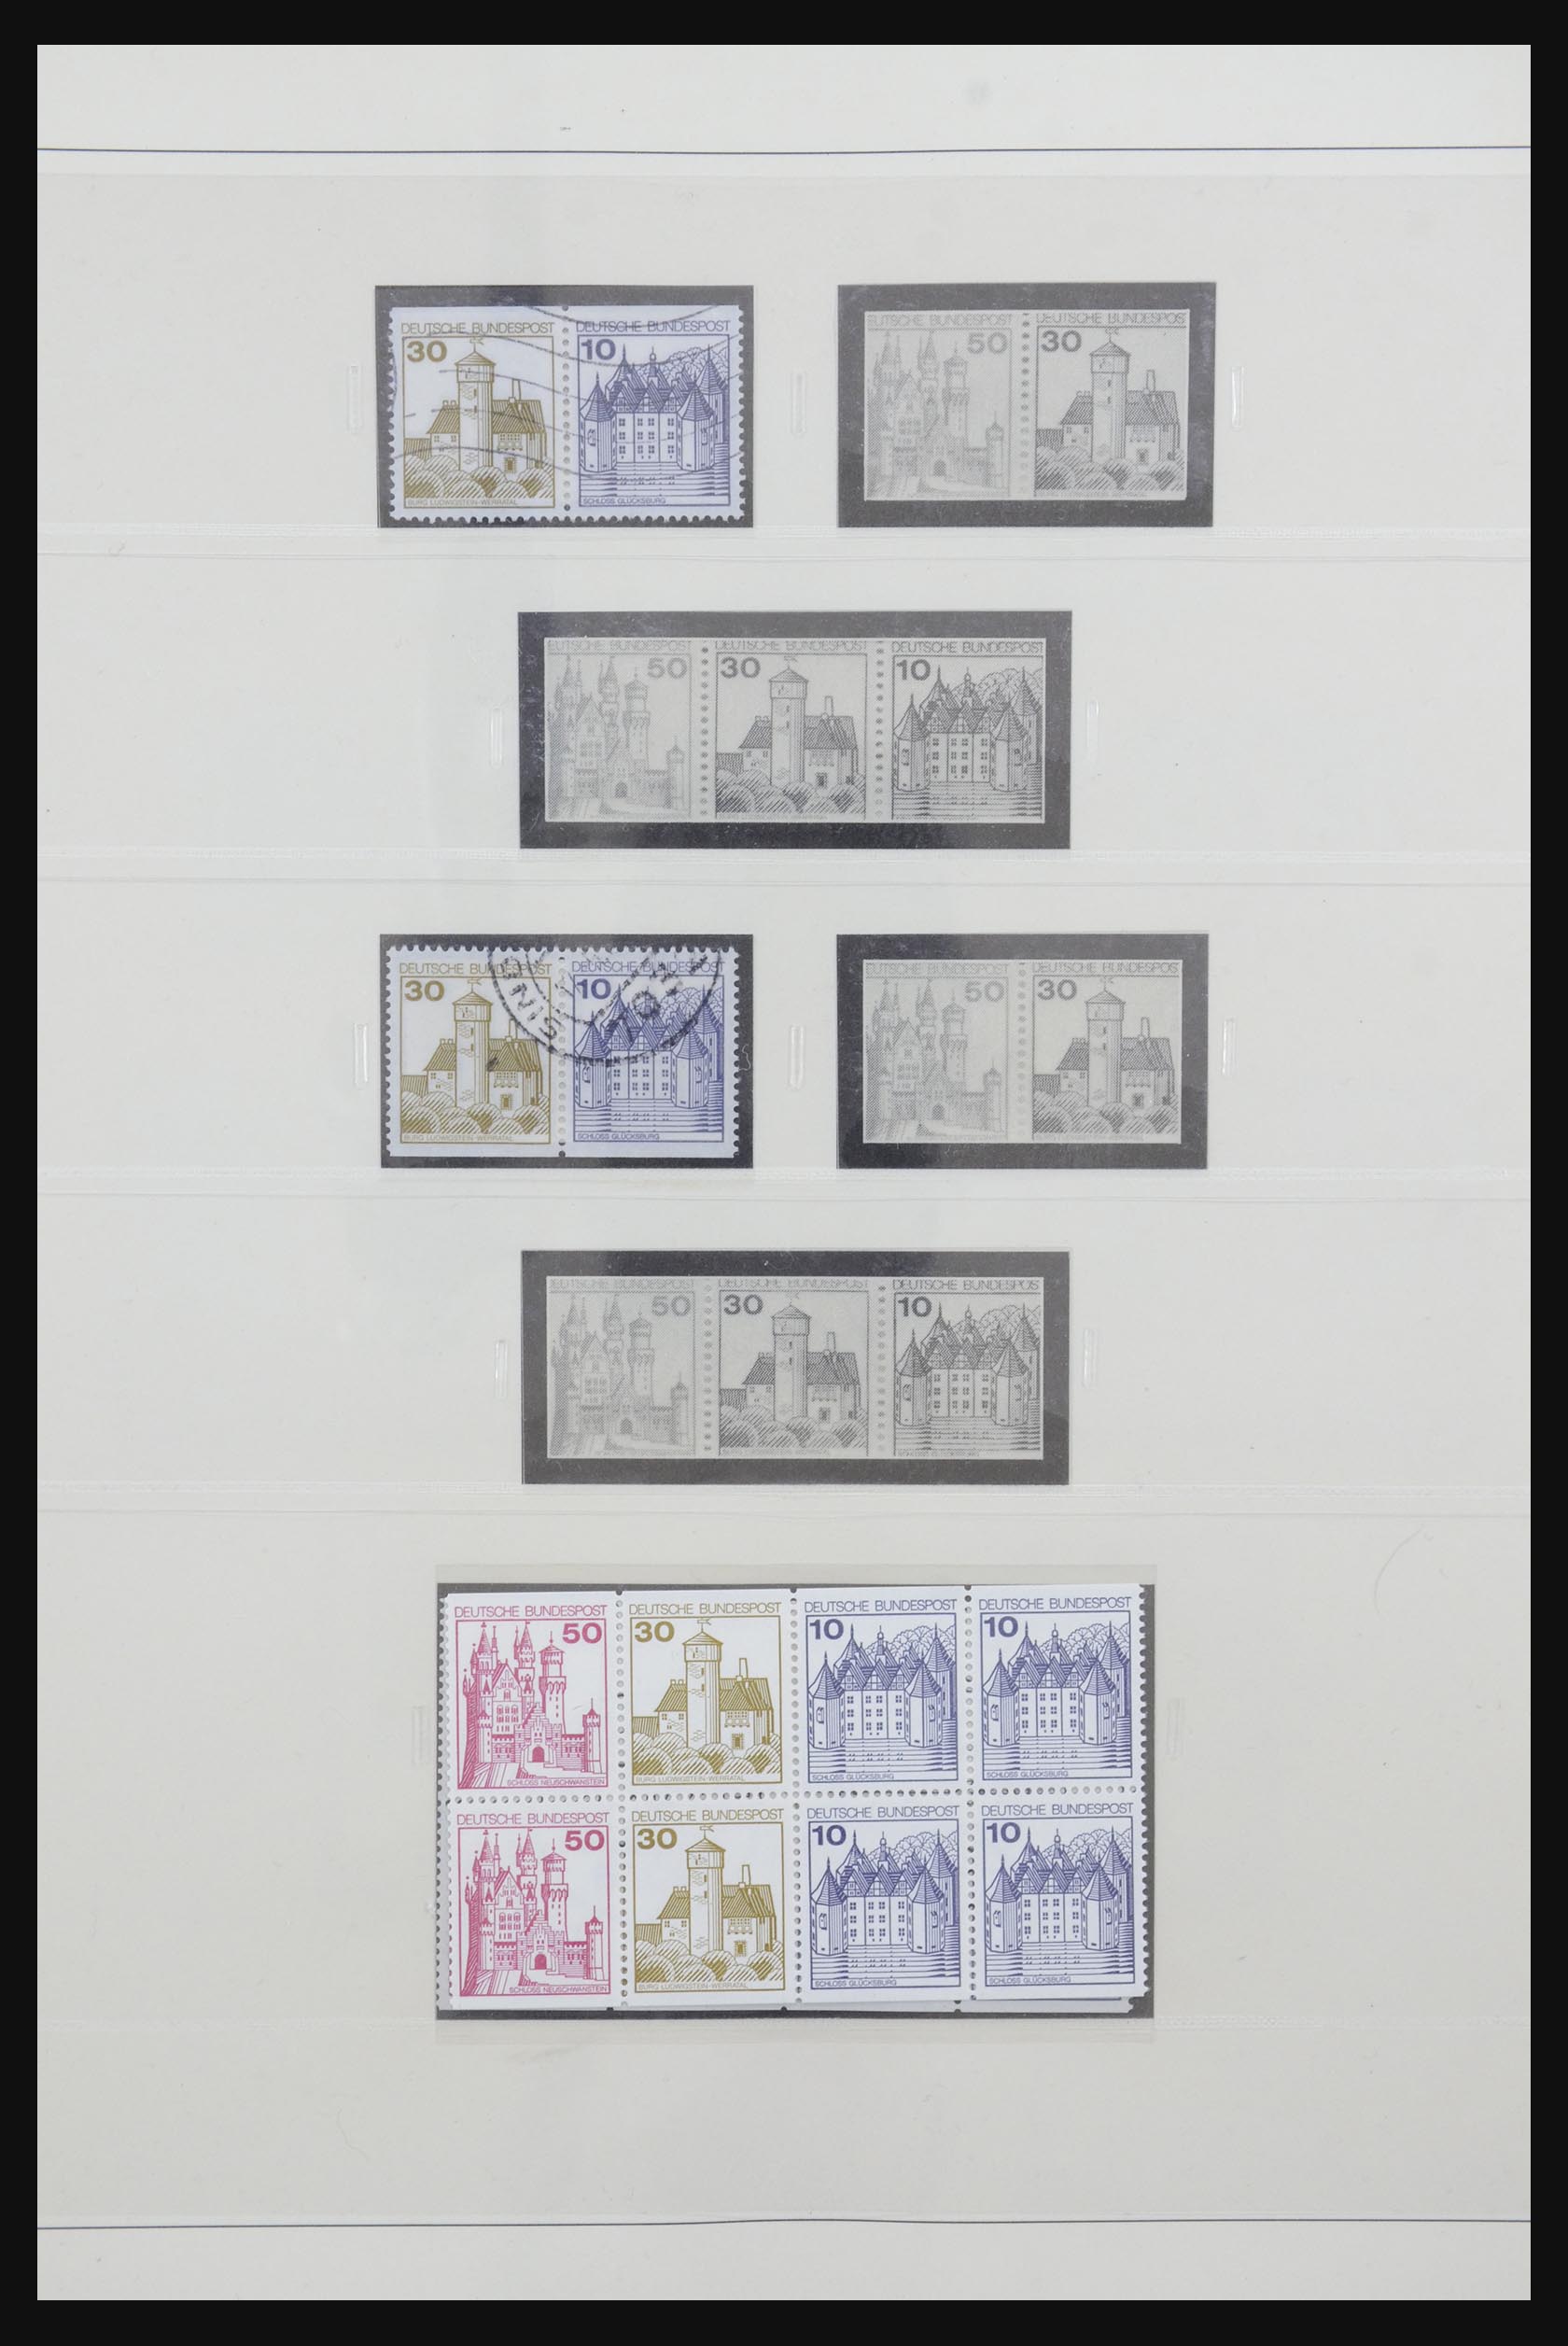 31842 056 - 31842 Bundespost combinaties 1951-2003.